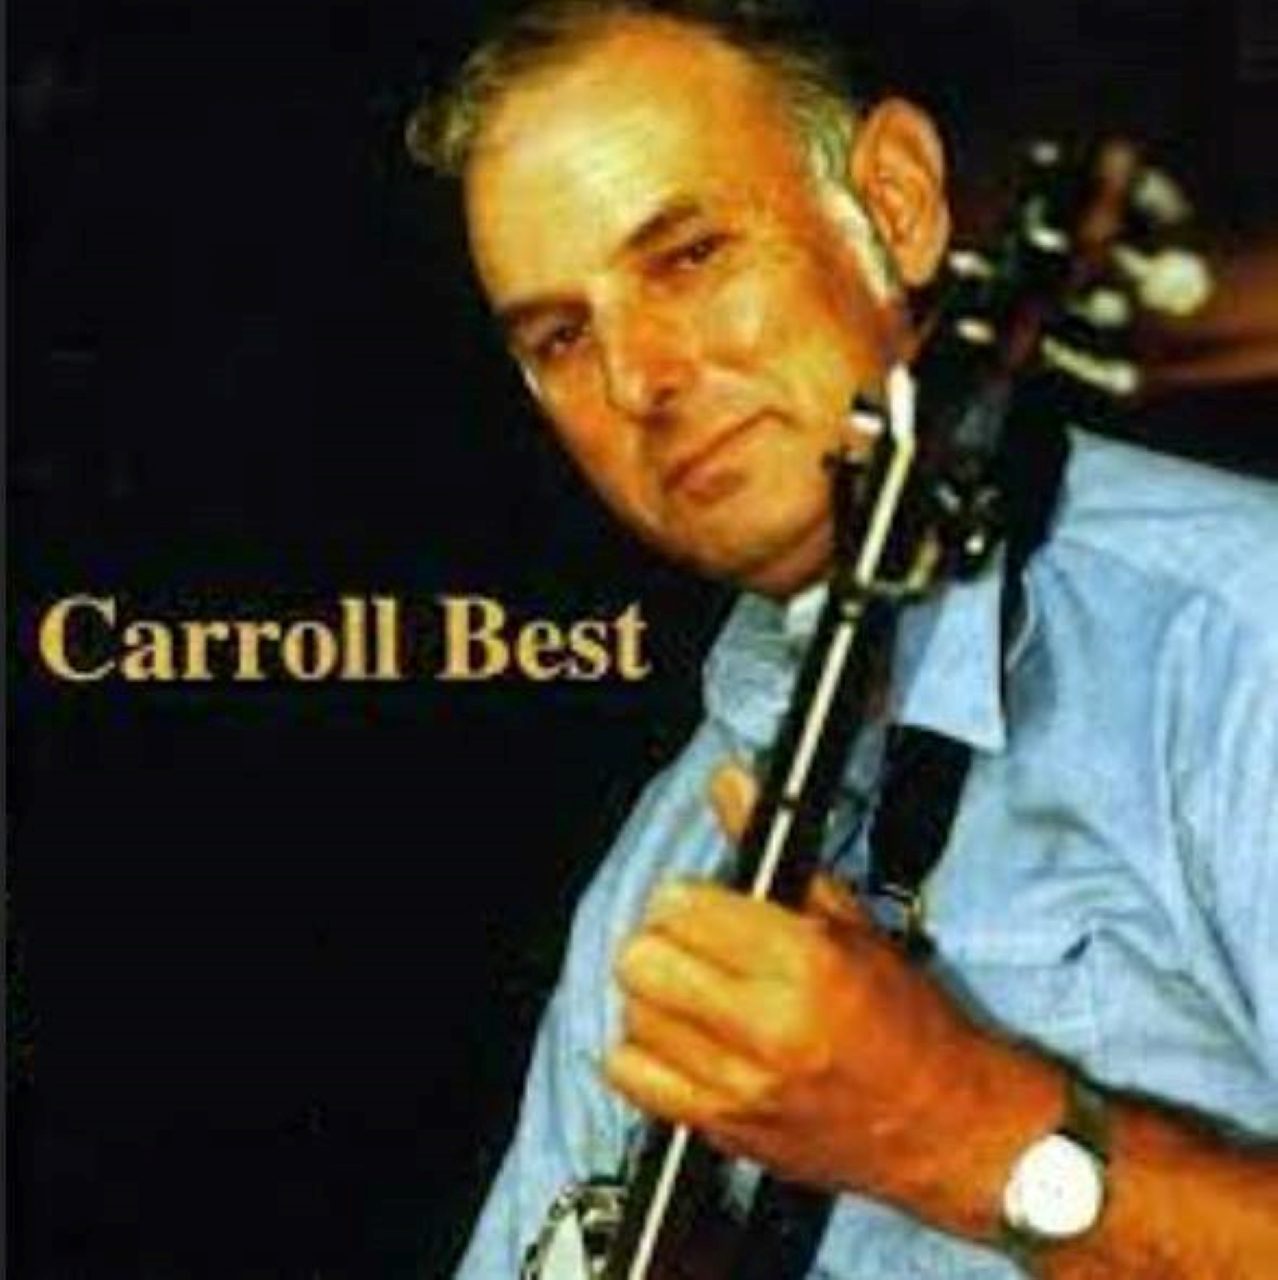 Carroll Best